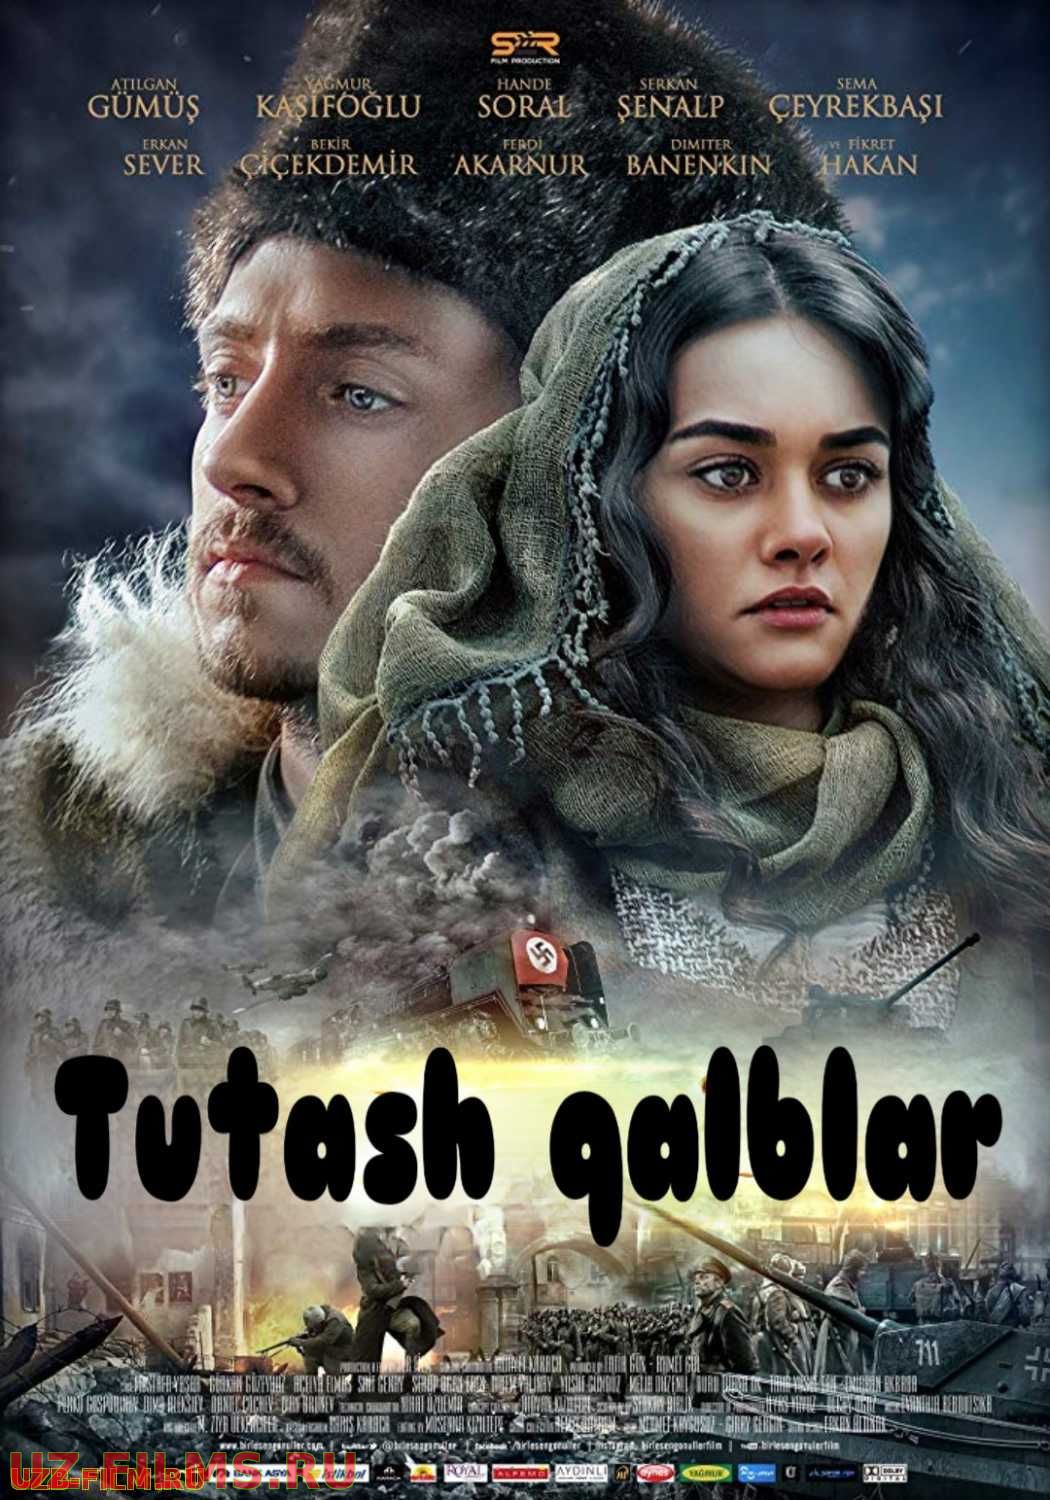 Tutash qalblar Turk kino Uzbek tilida 2014